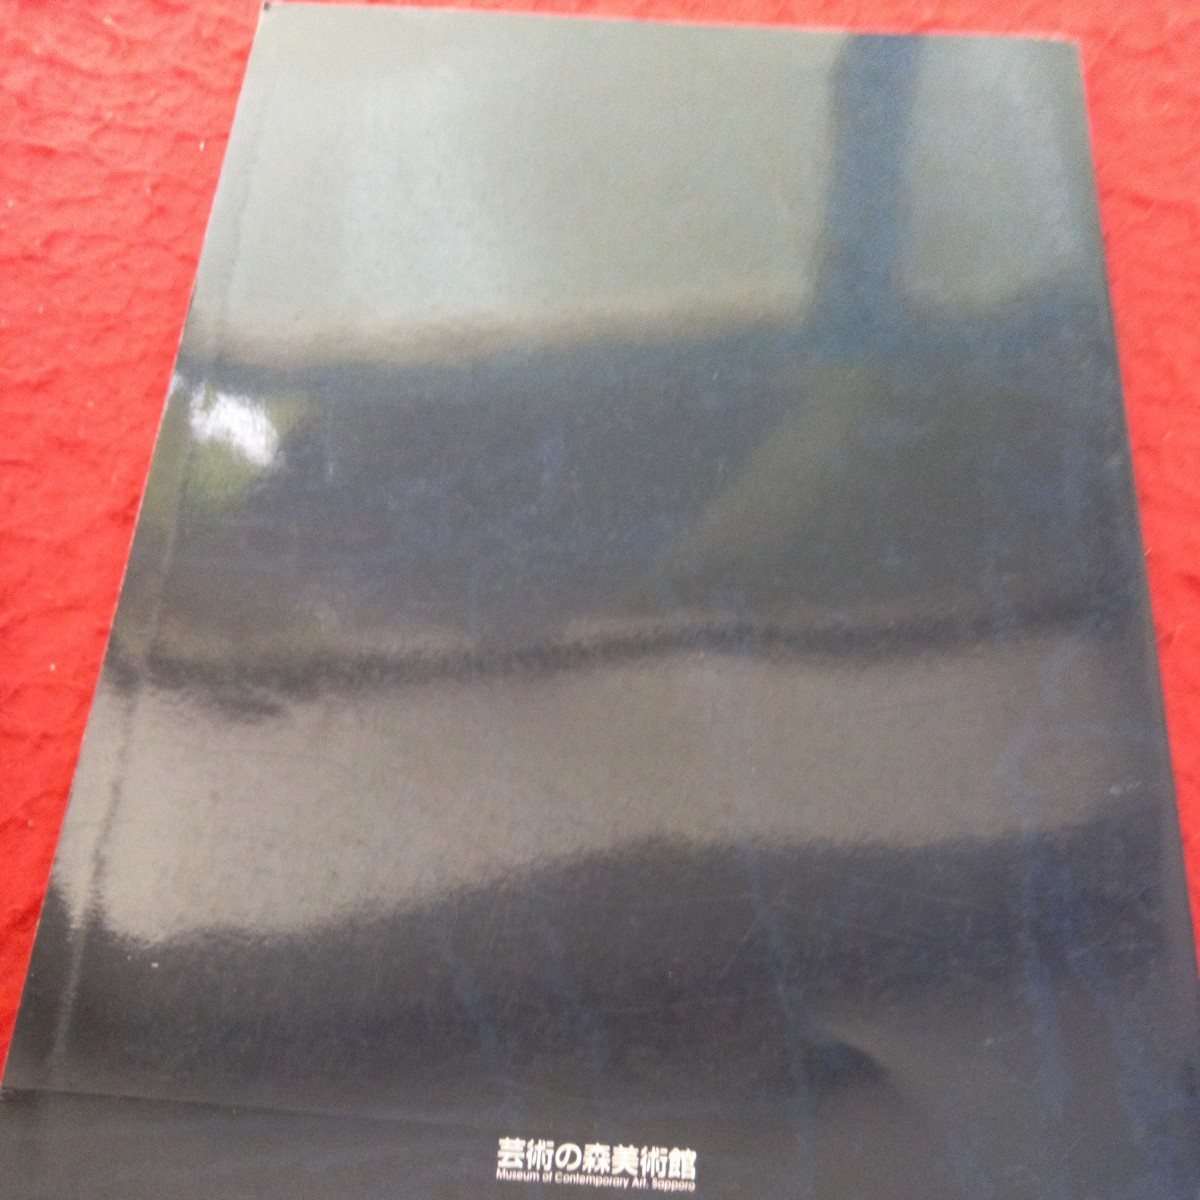 h-304 国松登展 群青の時 書き残された心象 1995年発行 札幌芸術の森 初期から〈眼のない魚〉まで 作品リスト など※1_傷あり